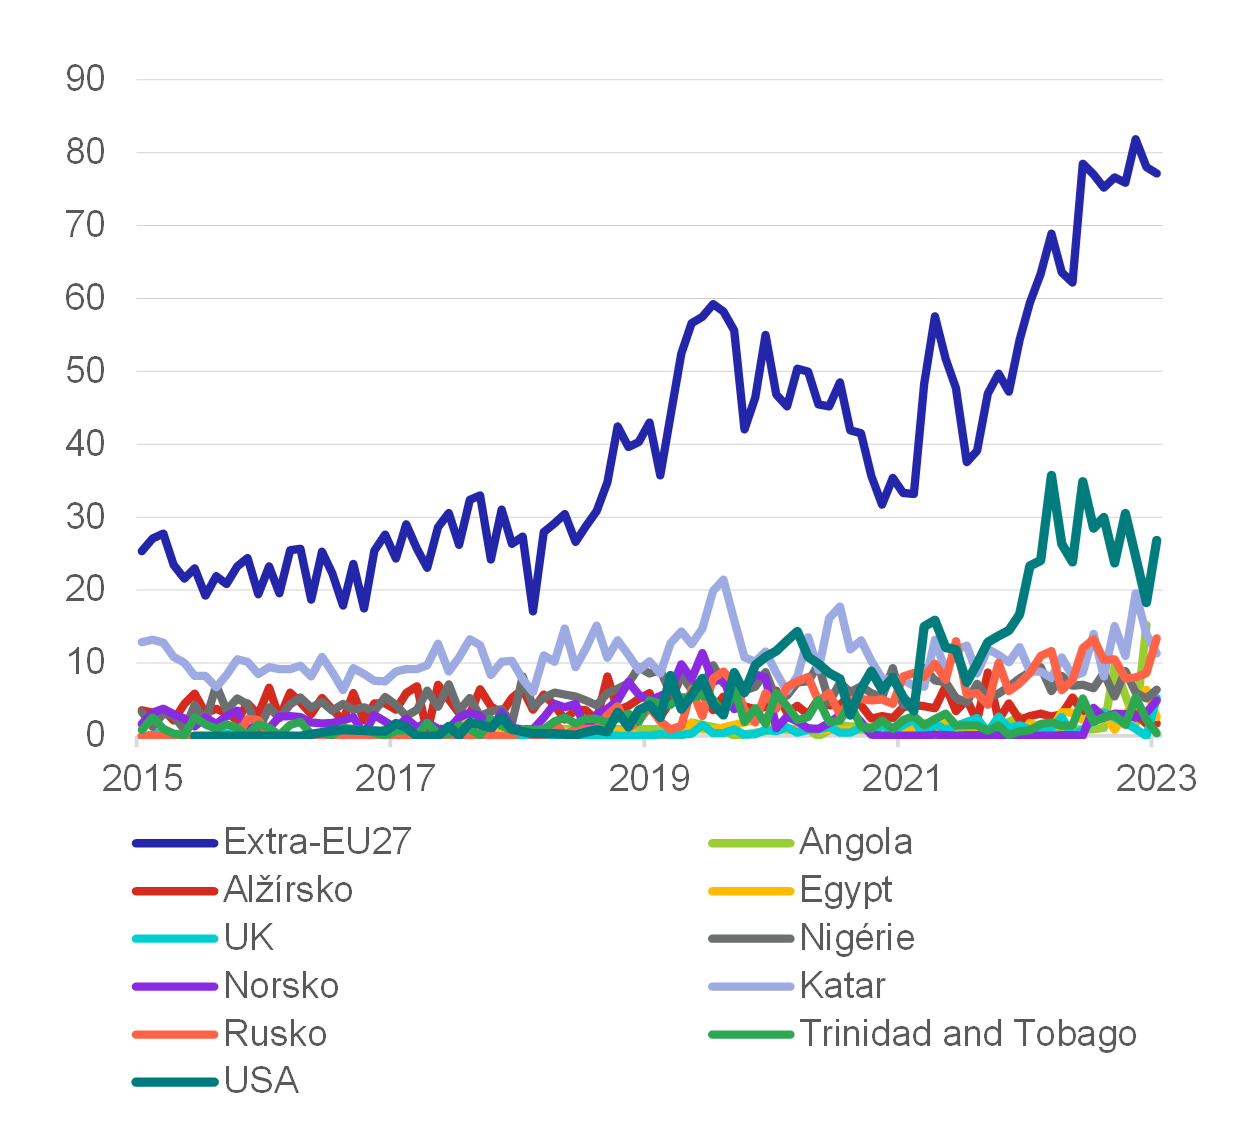 Graf 3 – Množství dováženého LNG do EU27 podle země původu